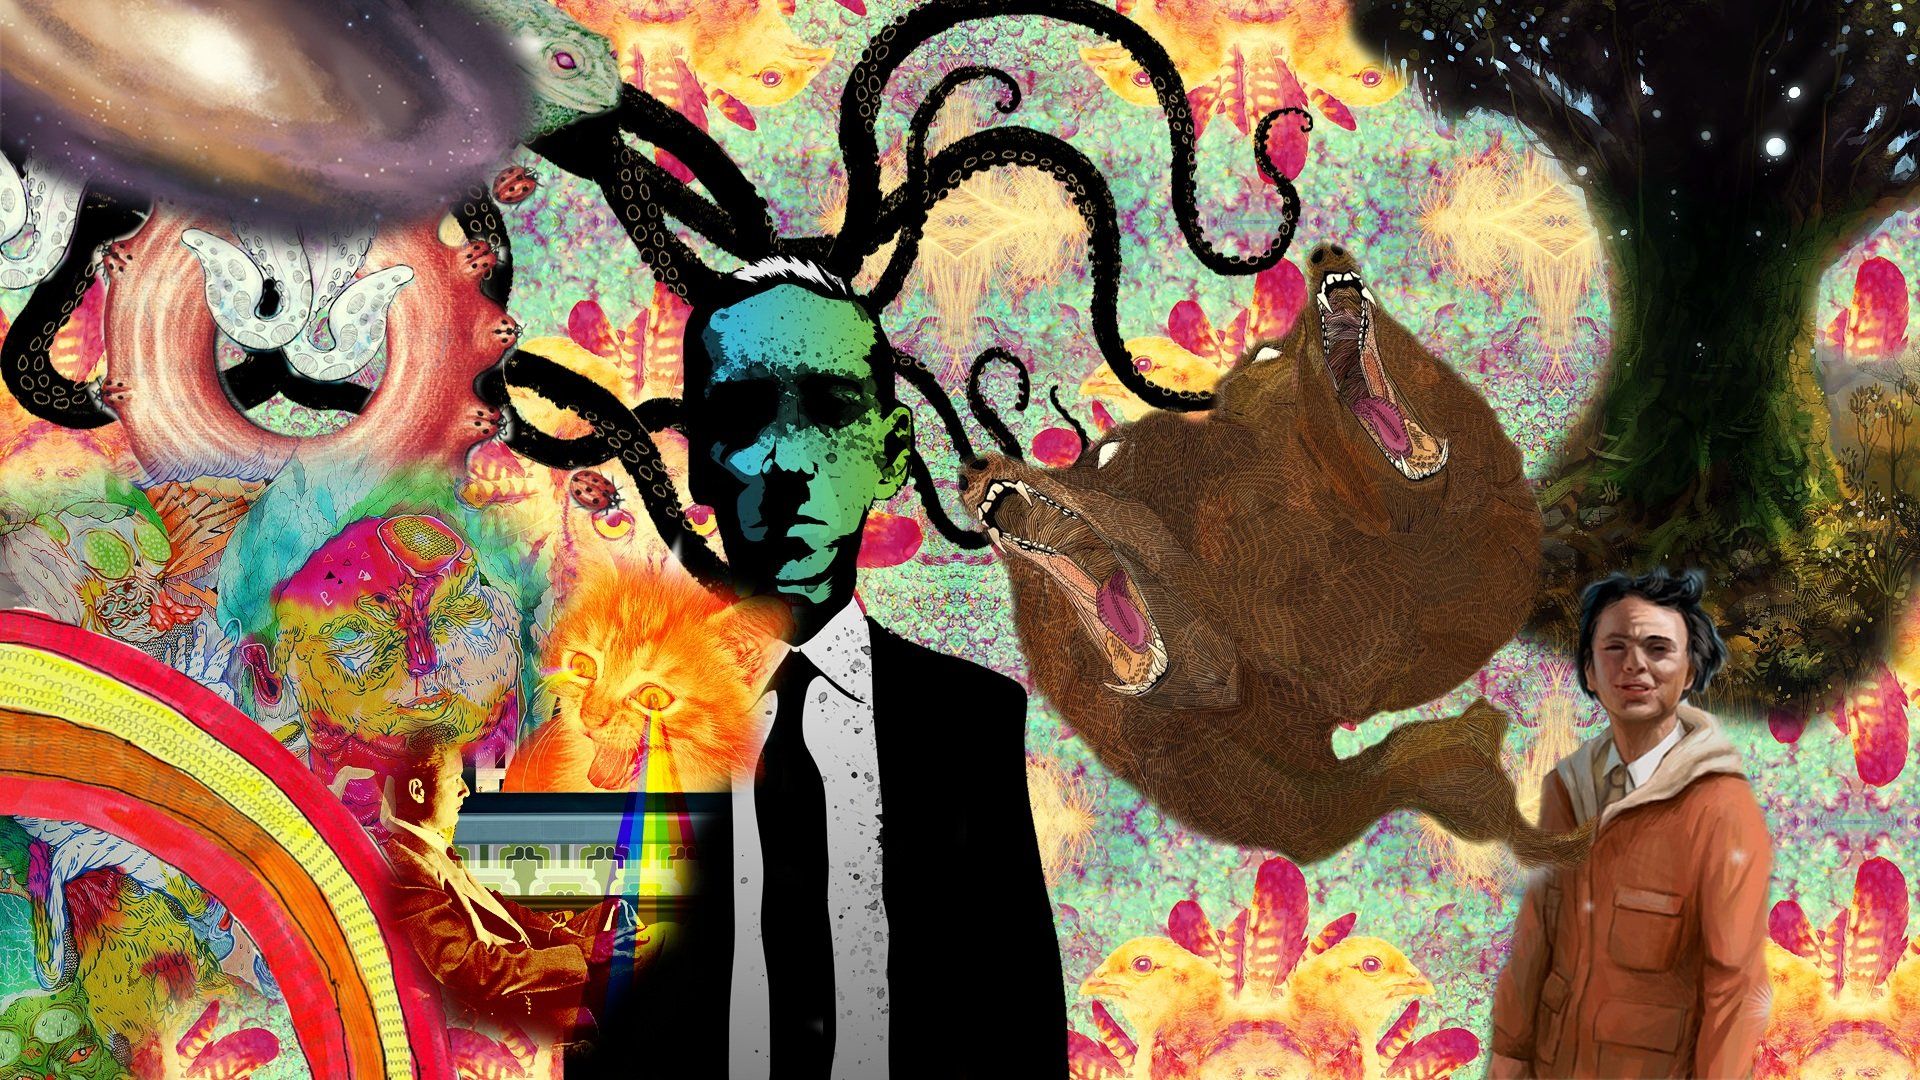 Carl Sagan HP Lovecraft wallpaper | 1920x1080 | 297698 | WallpaperUP